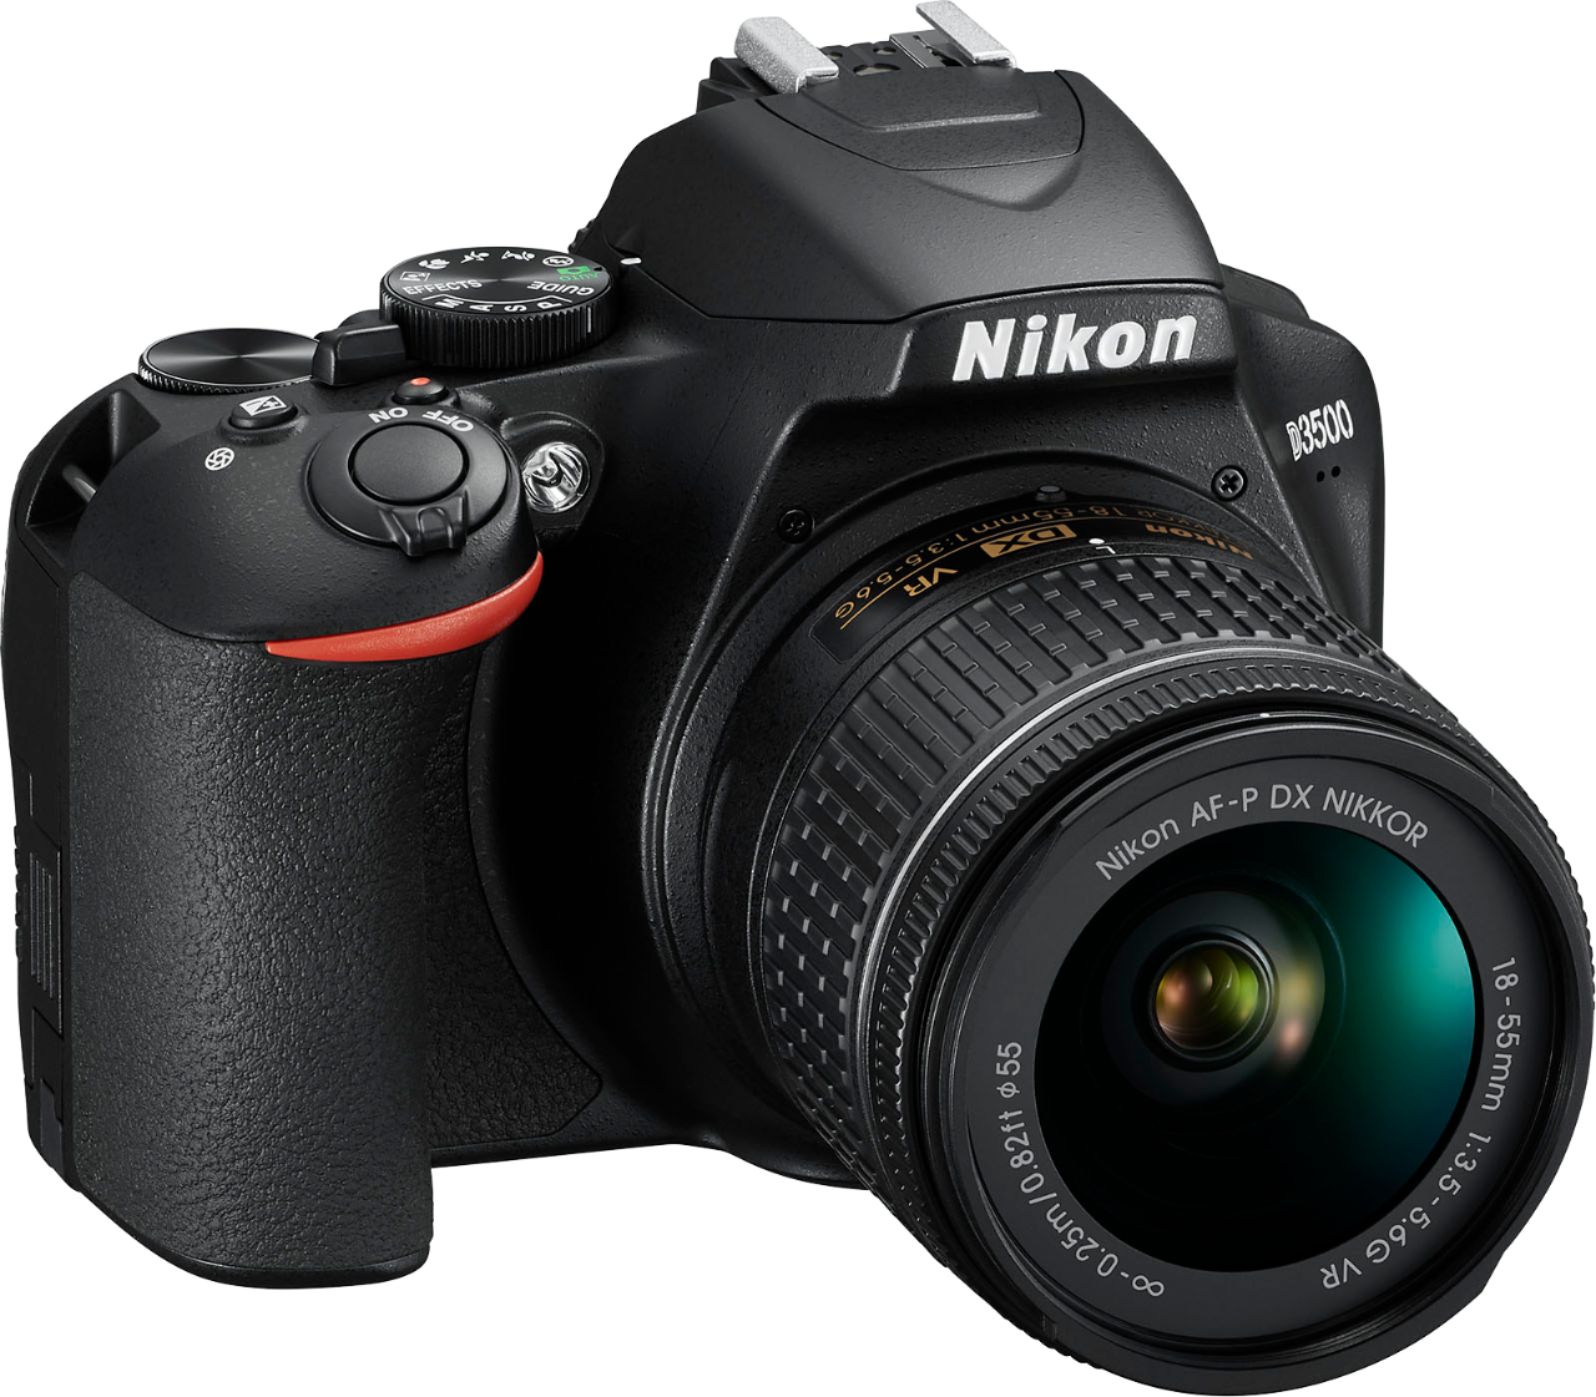 Nikon D3500 Dslr Video Camera With Af P Dx Nikkor 18 55mm F 3 5 5 6g Vr Lens Black 1590 Best Buy